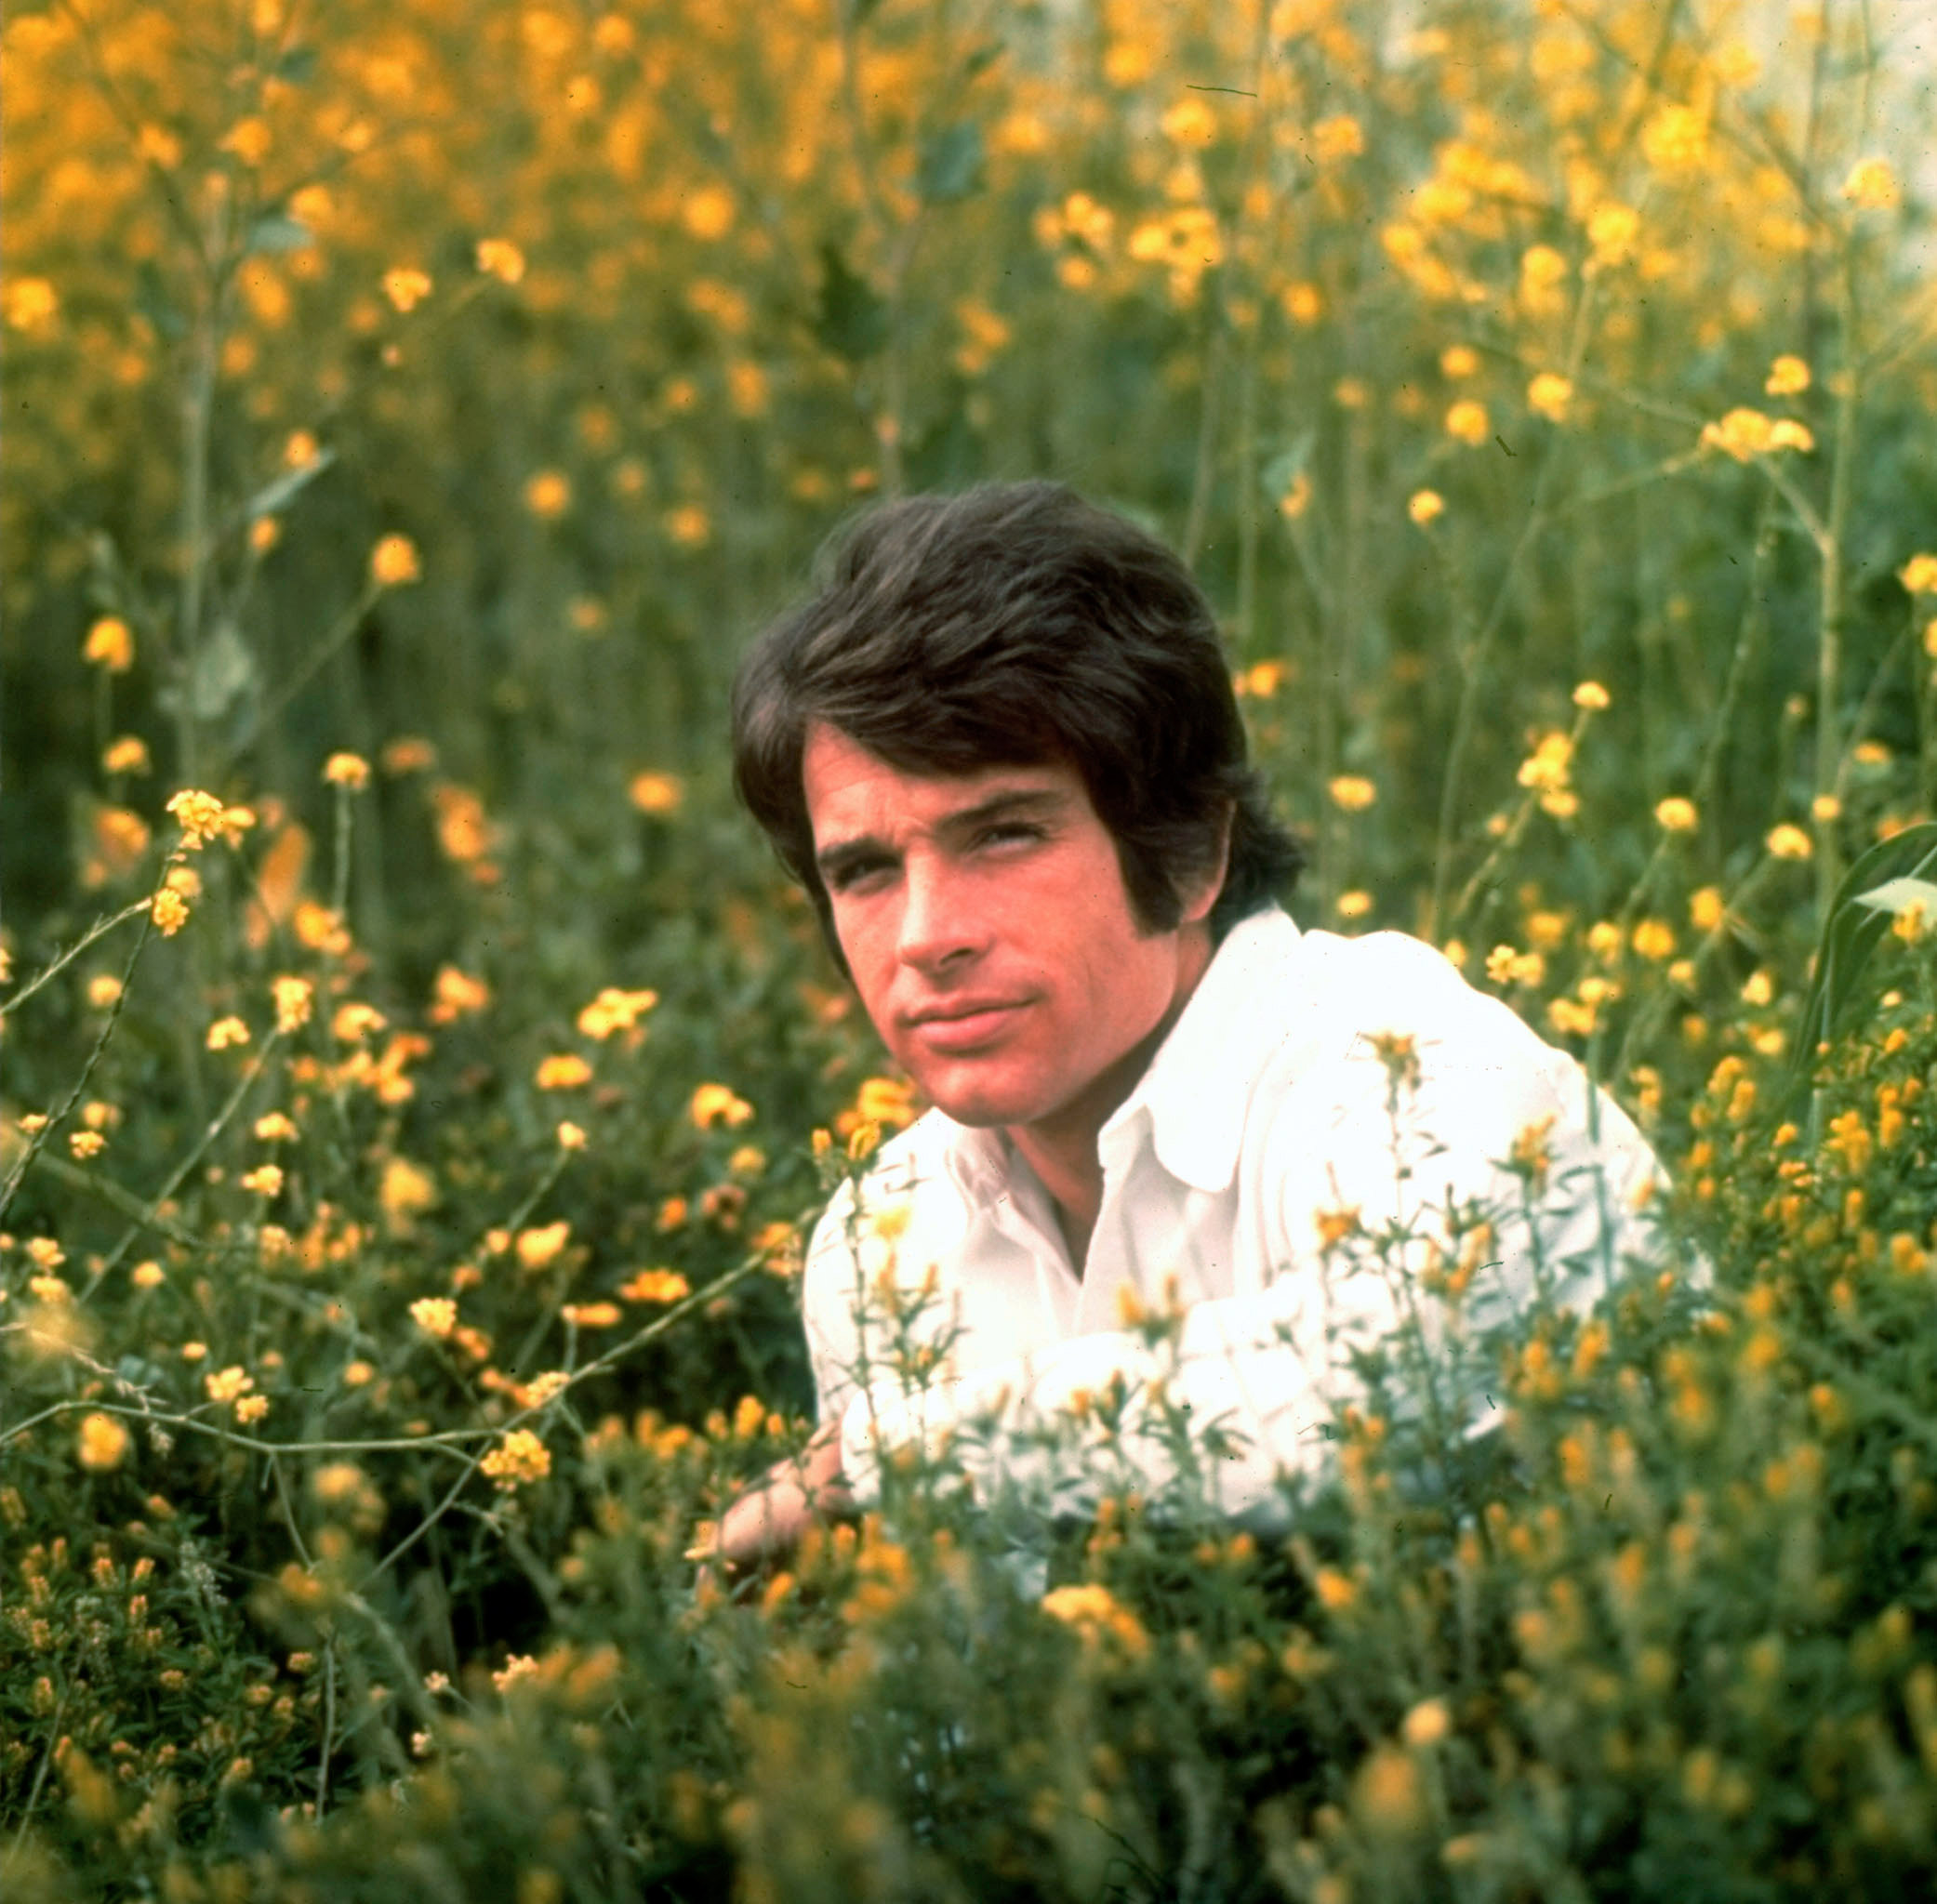 Warren Beatty sitting in field of flowers in 1967.